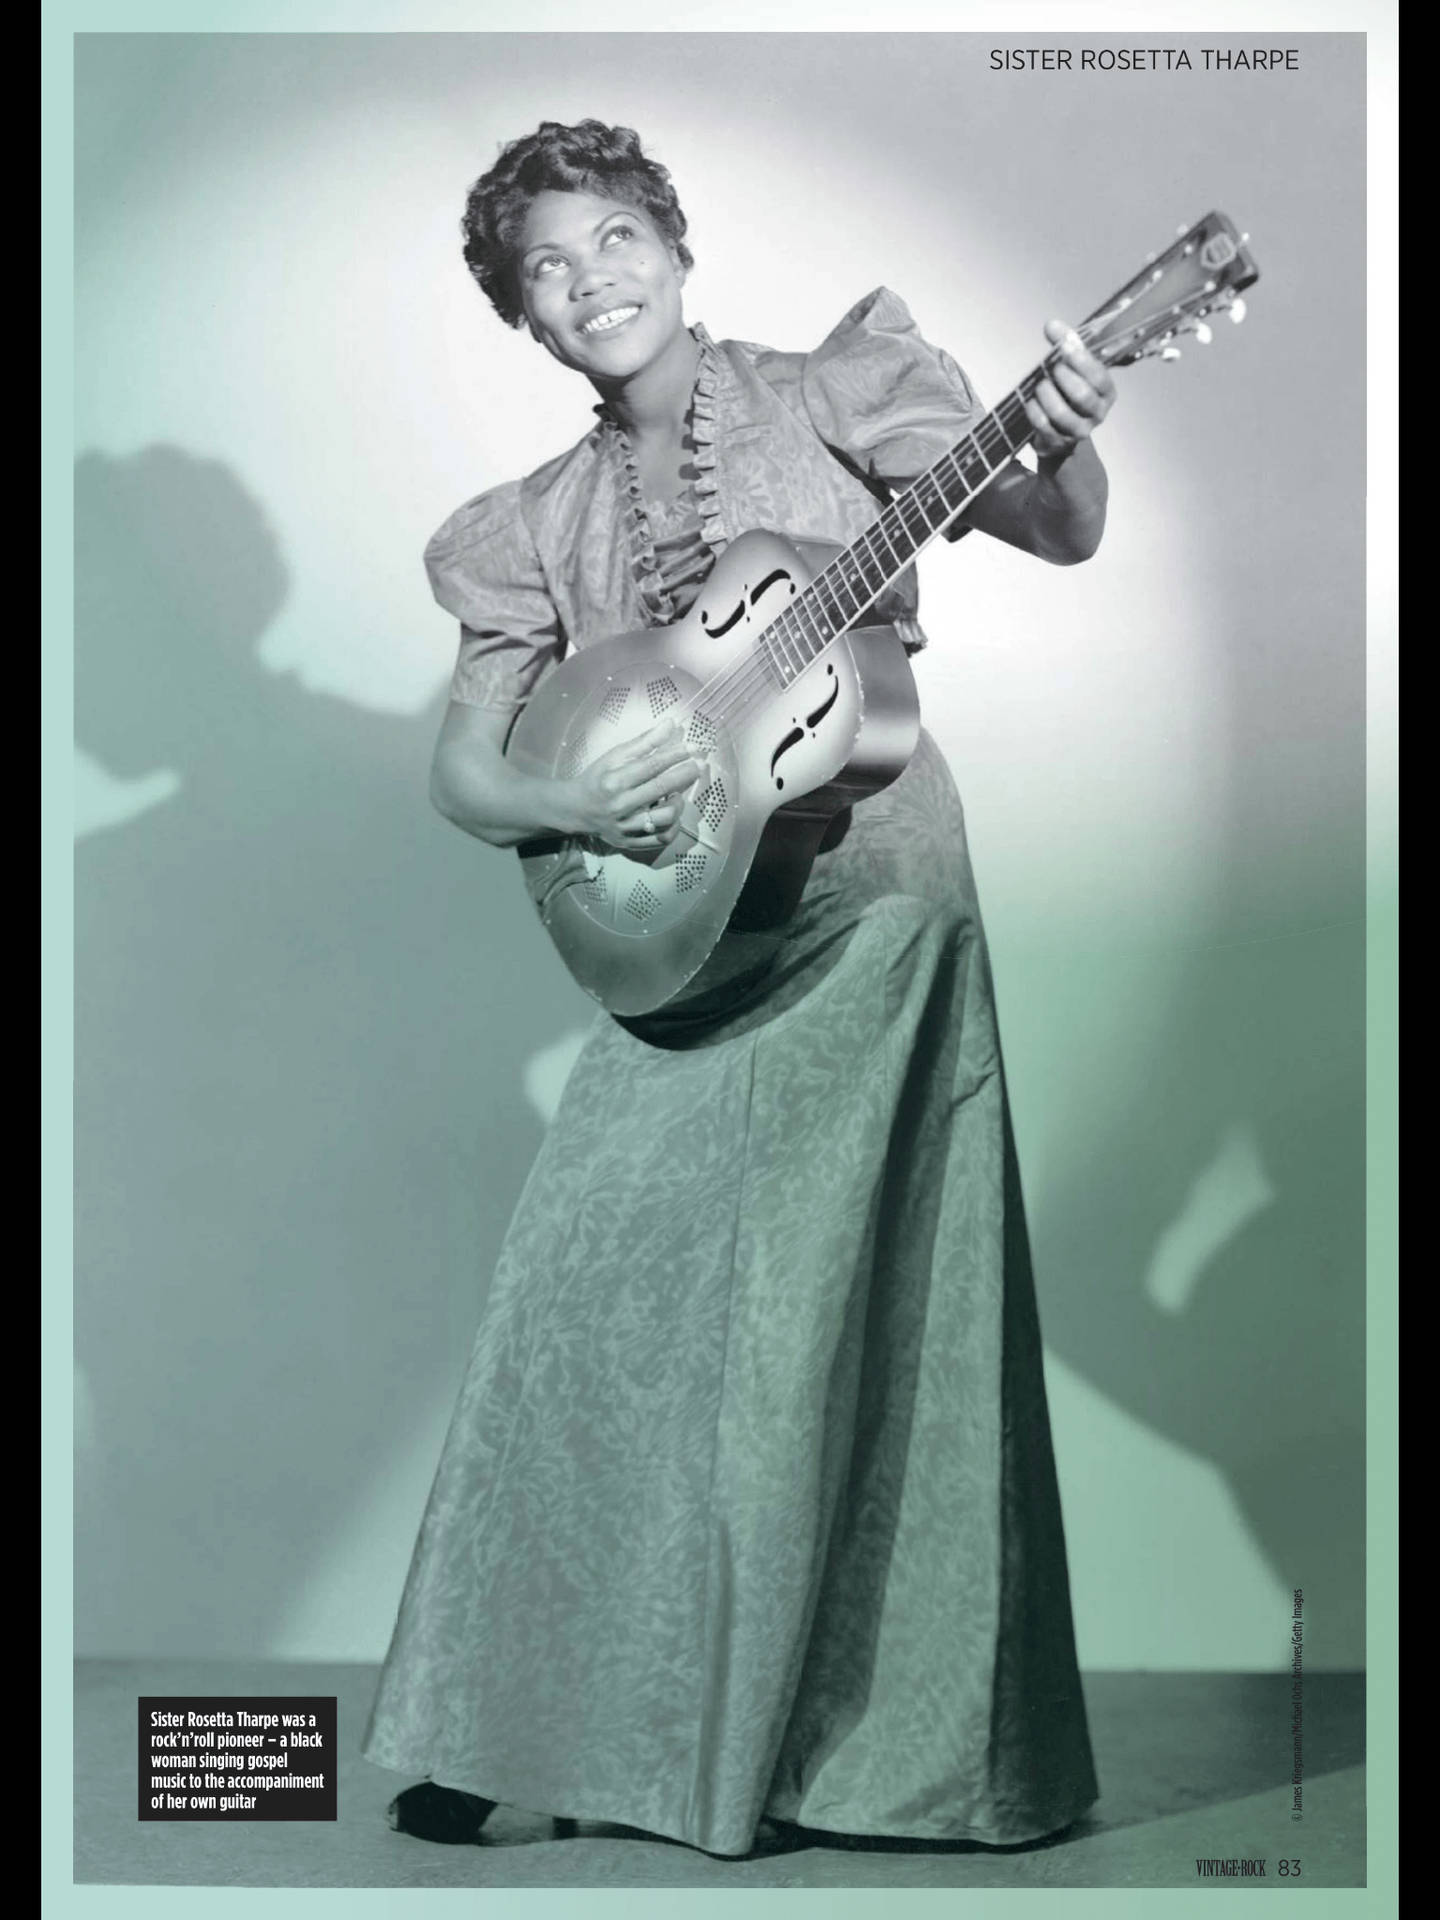 Fotovægafbillede af Sister Rosetta Tharpe, der spiller guitar. Wallpaper